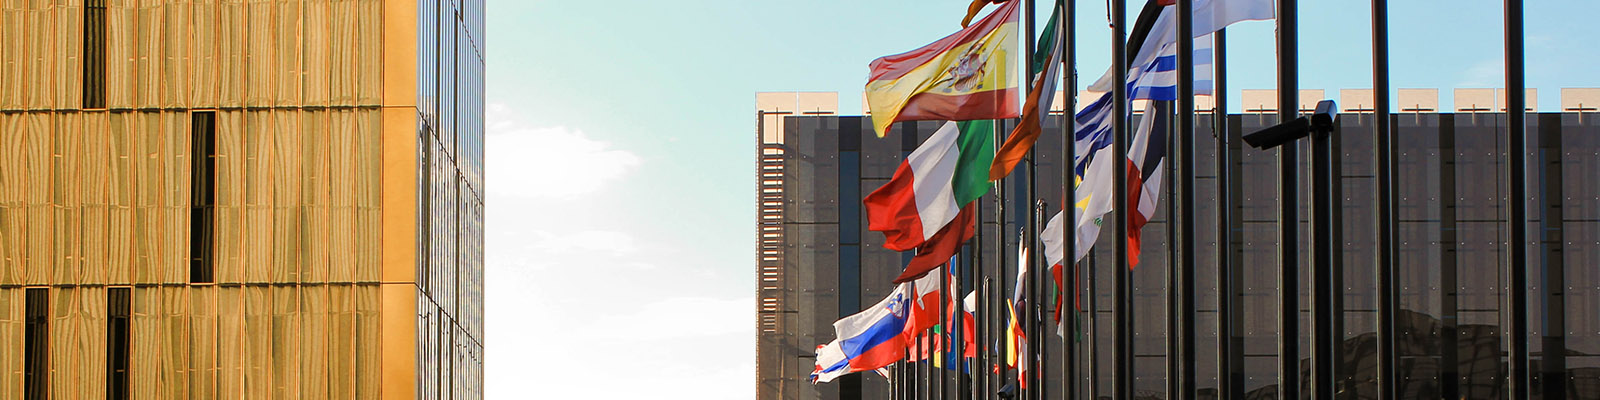 Flags at EU Parliament